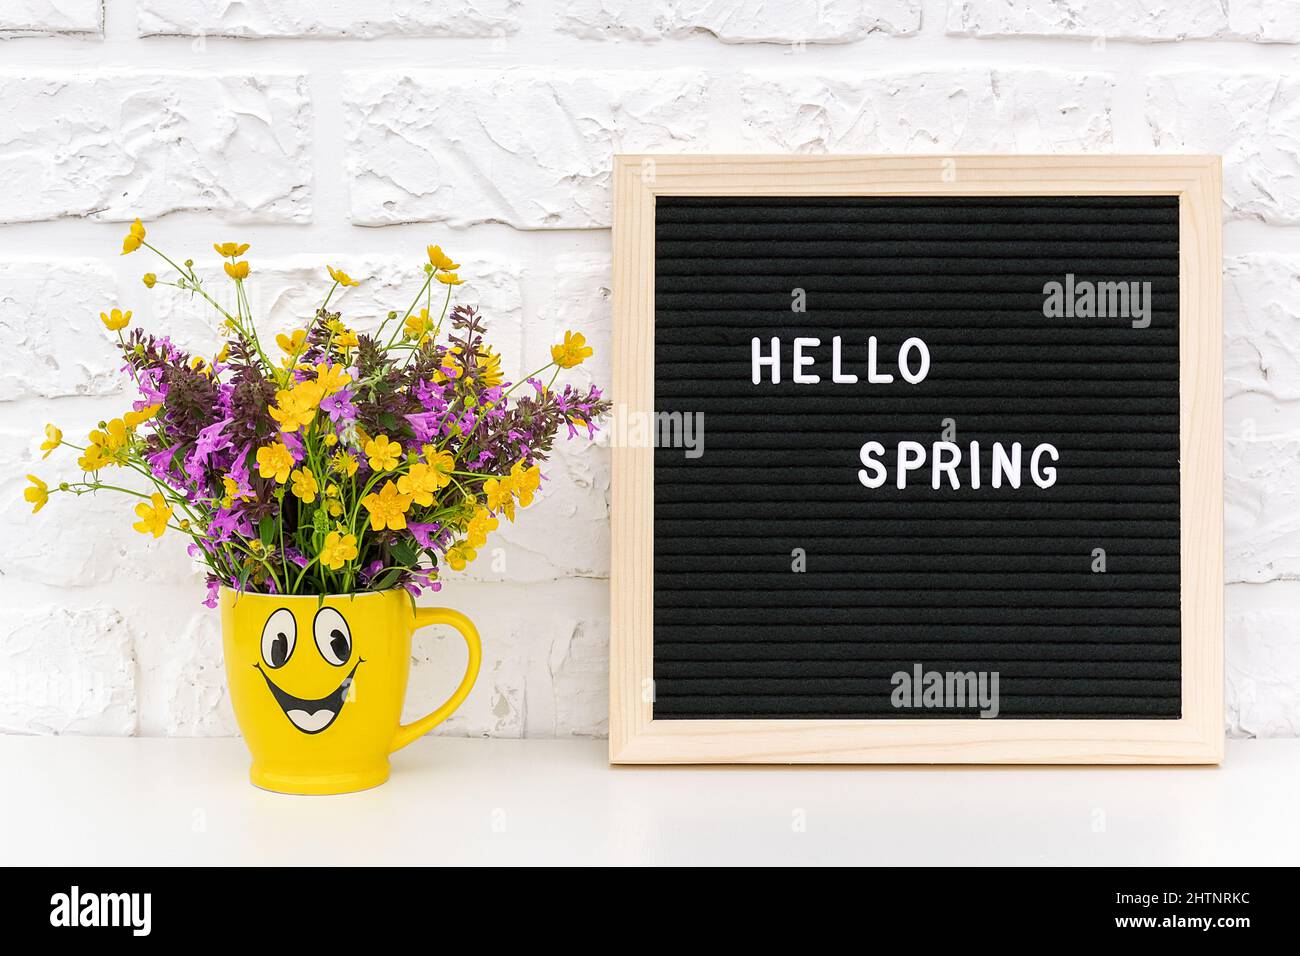 Text Hallo Frühling auf schwarzem Briefbrett und Blumenstrauß in lustiger gelber Tasse auf weißem Backsteinwand. Konzept Springtime Stimmung und Stockfoto